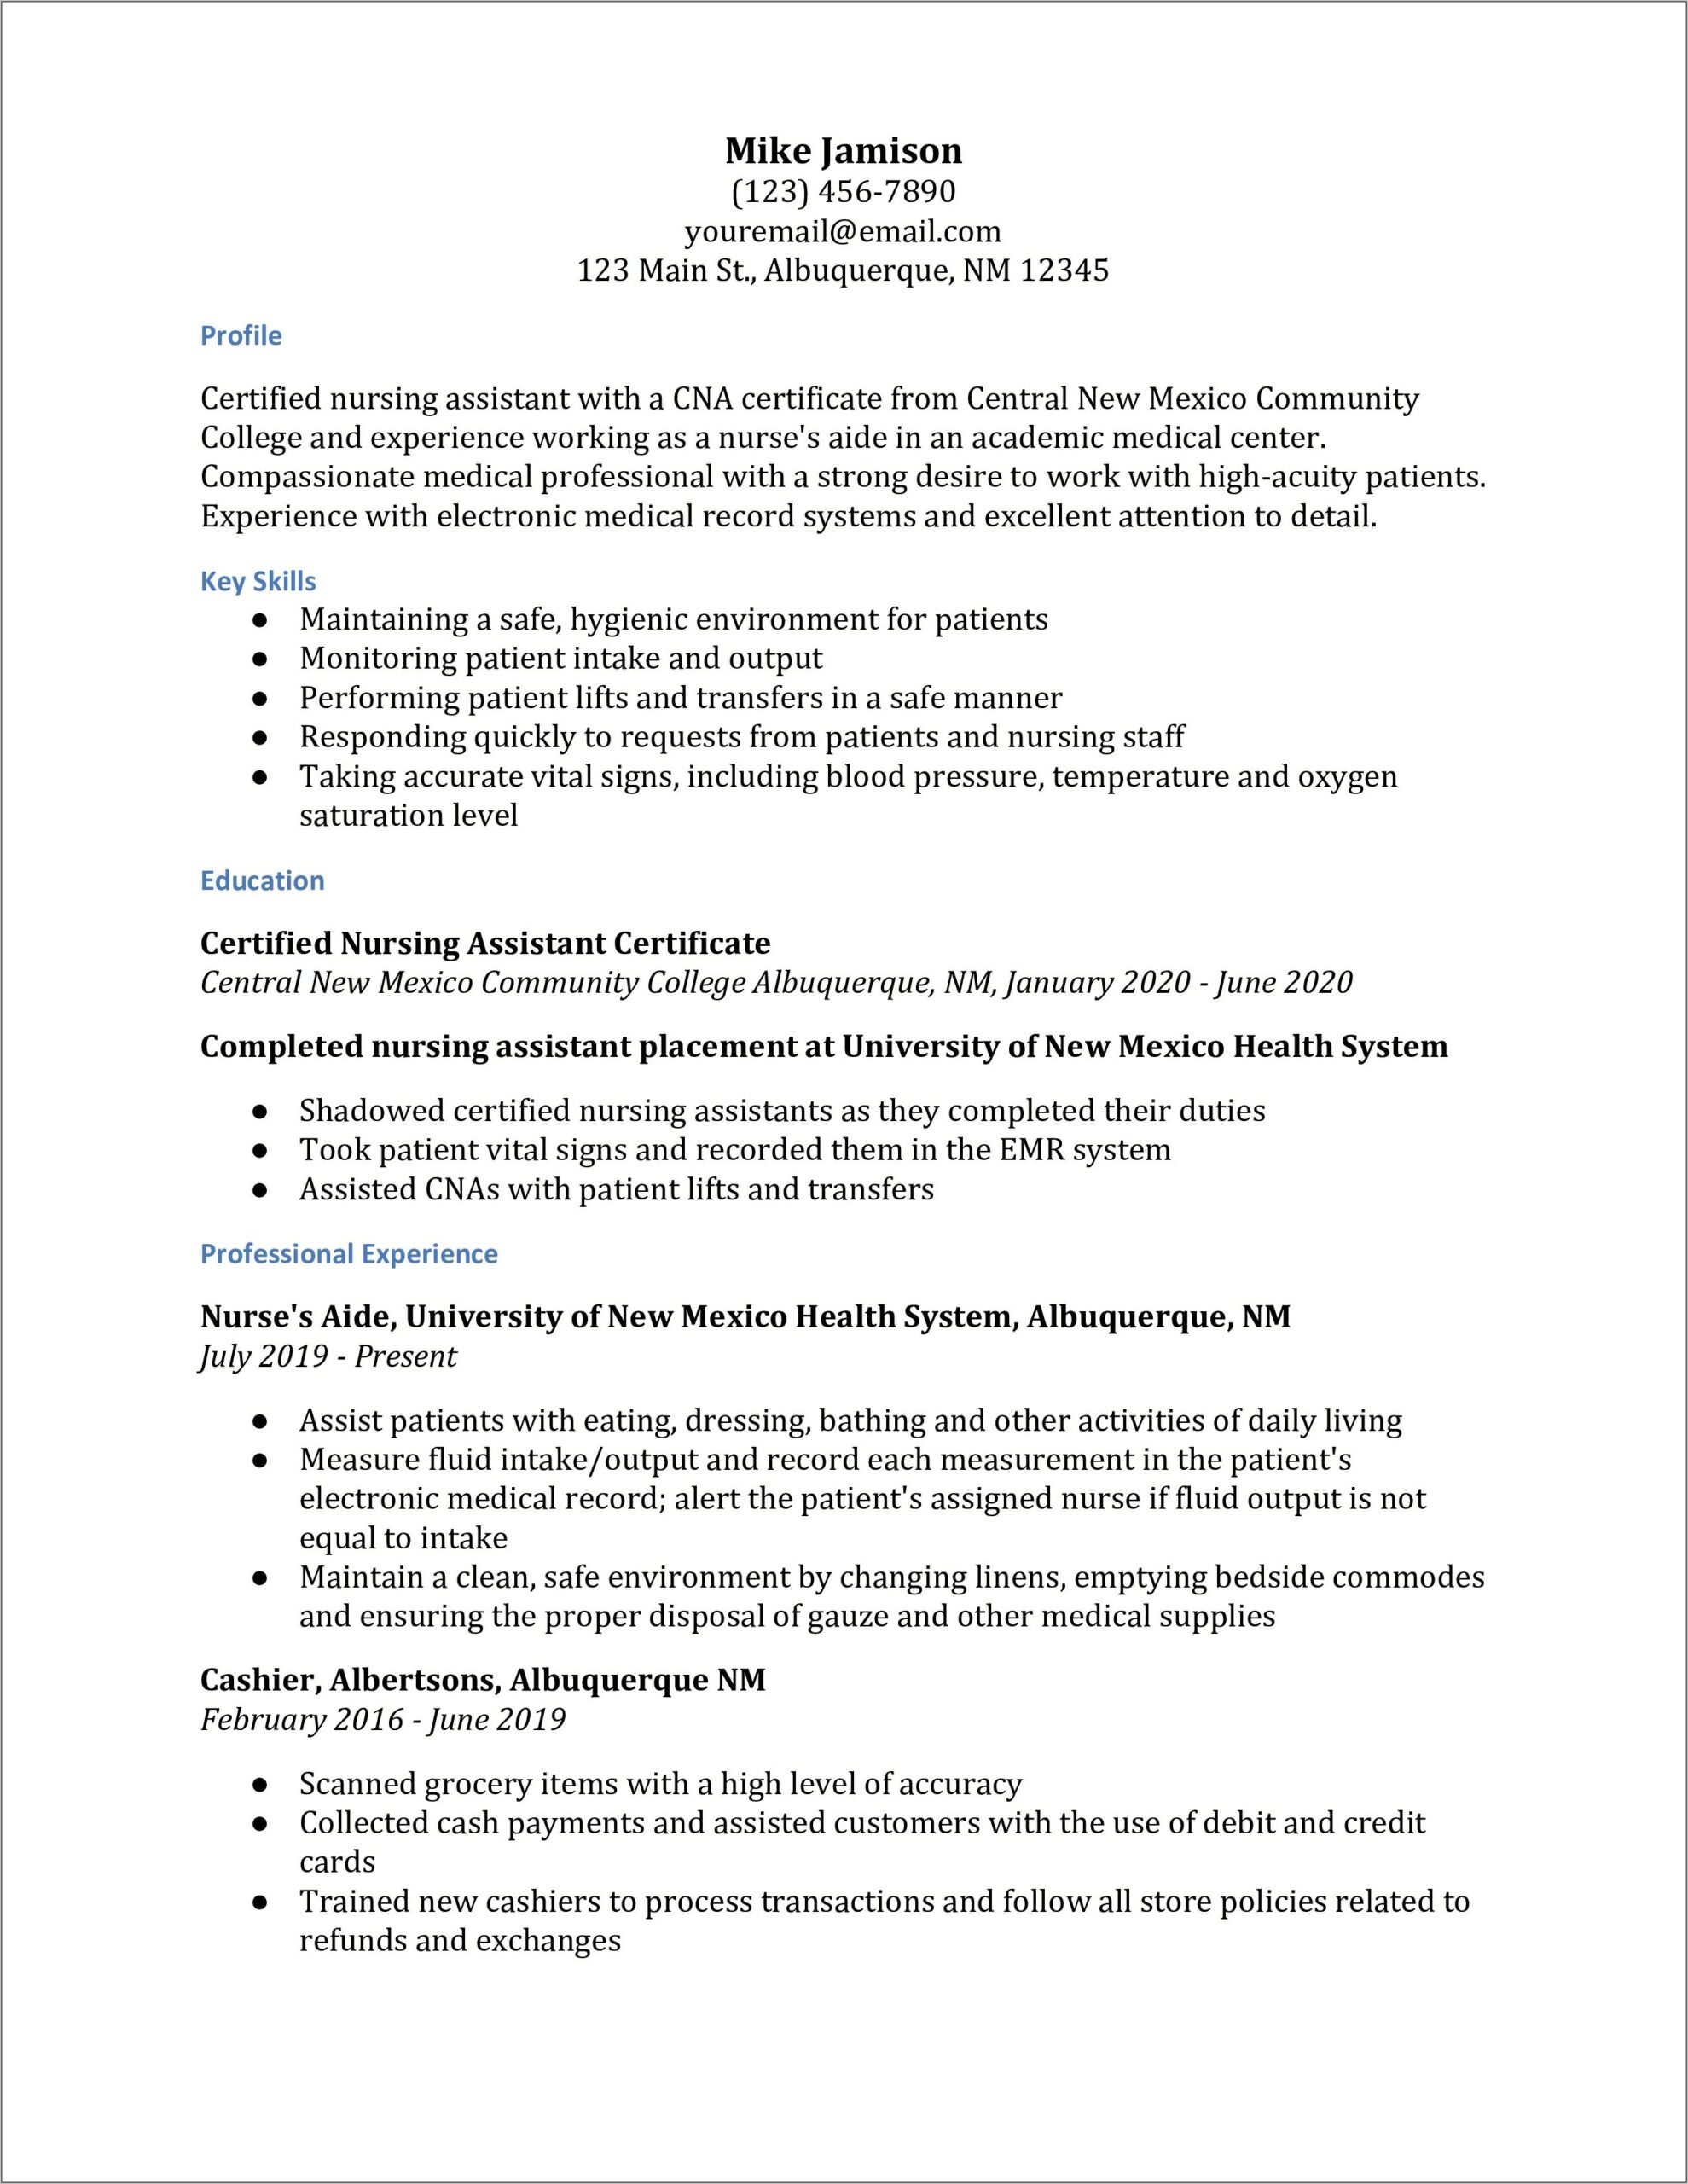 Resume Description For Patient Care Assistant